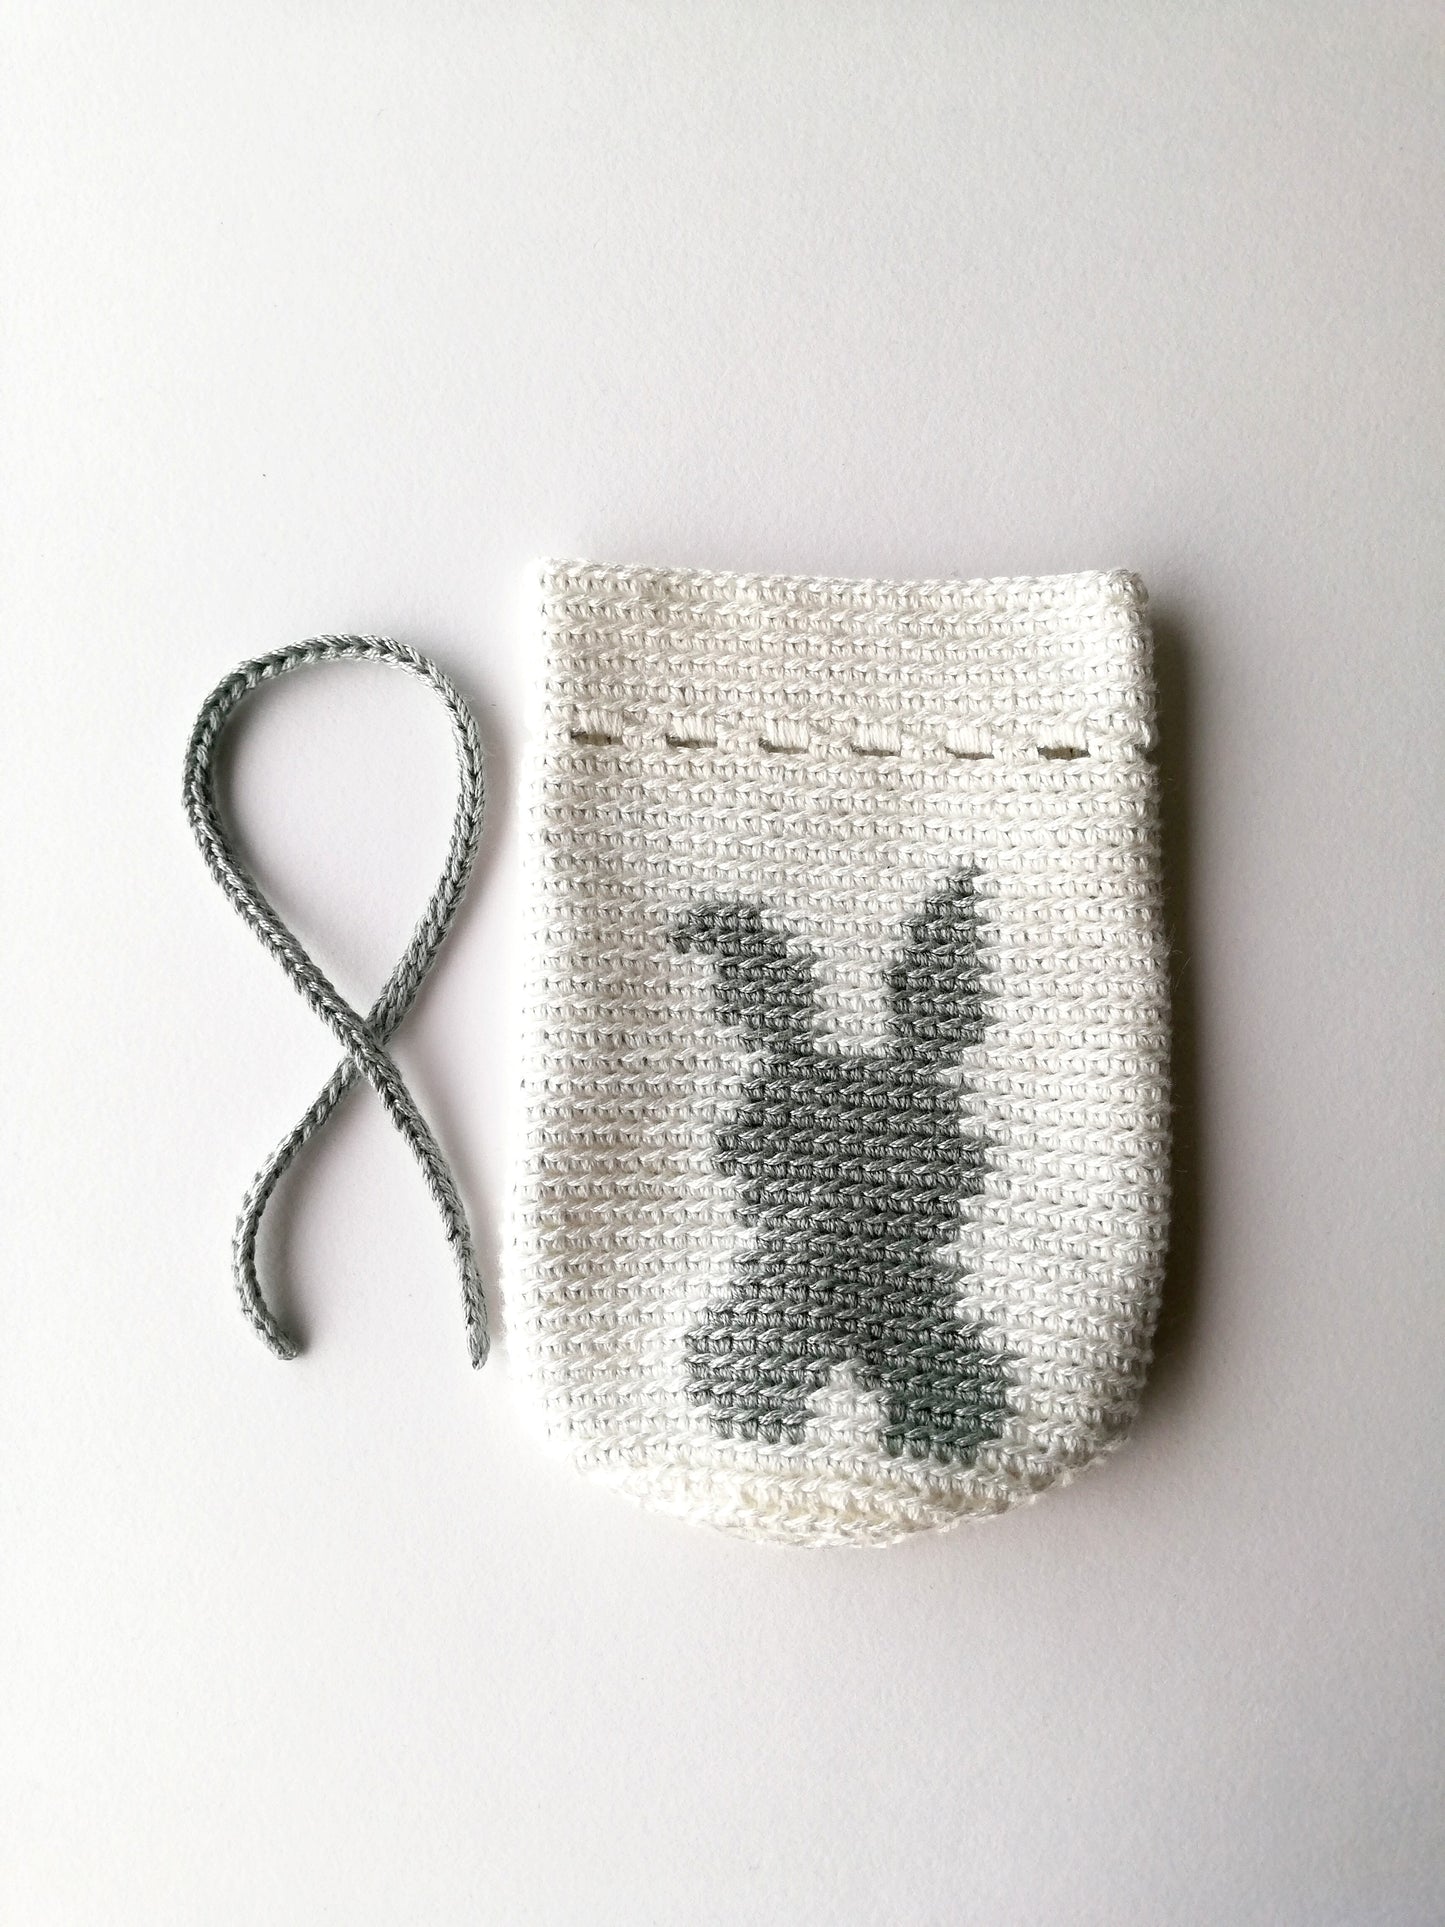 Tapestry crochet drawstring bag Bunny